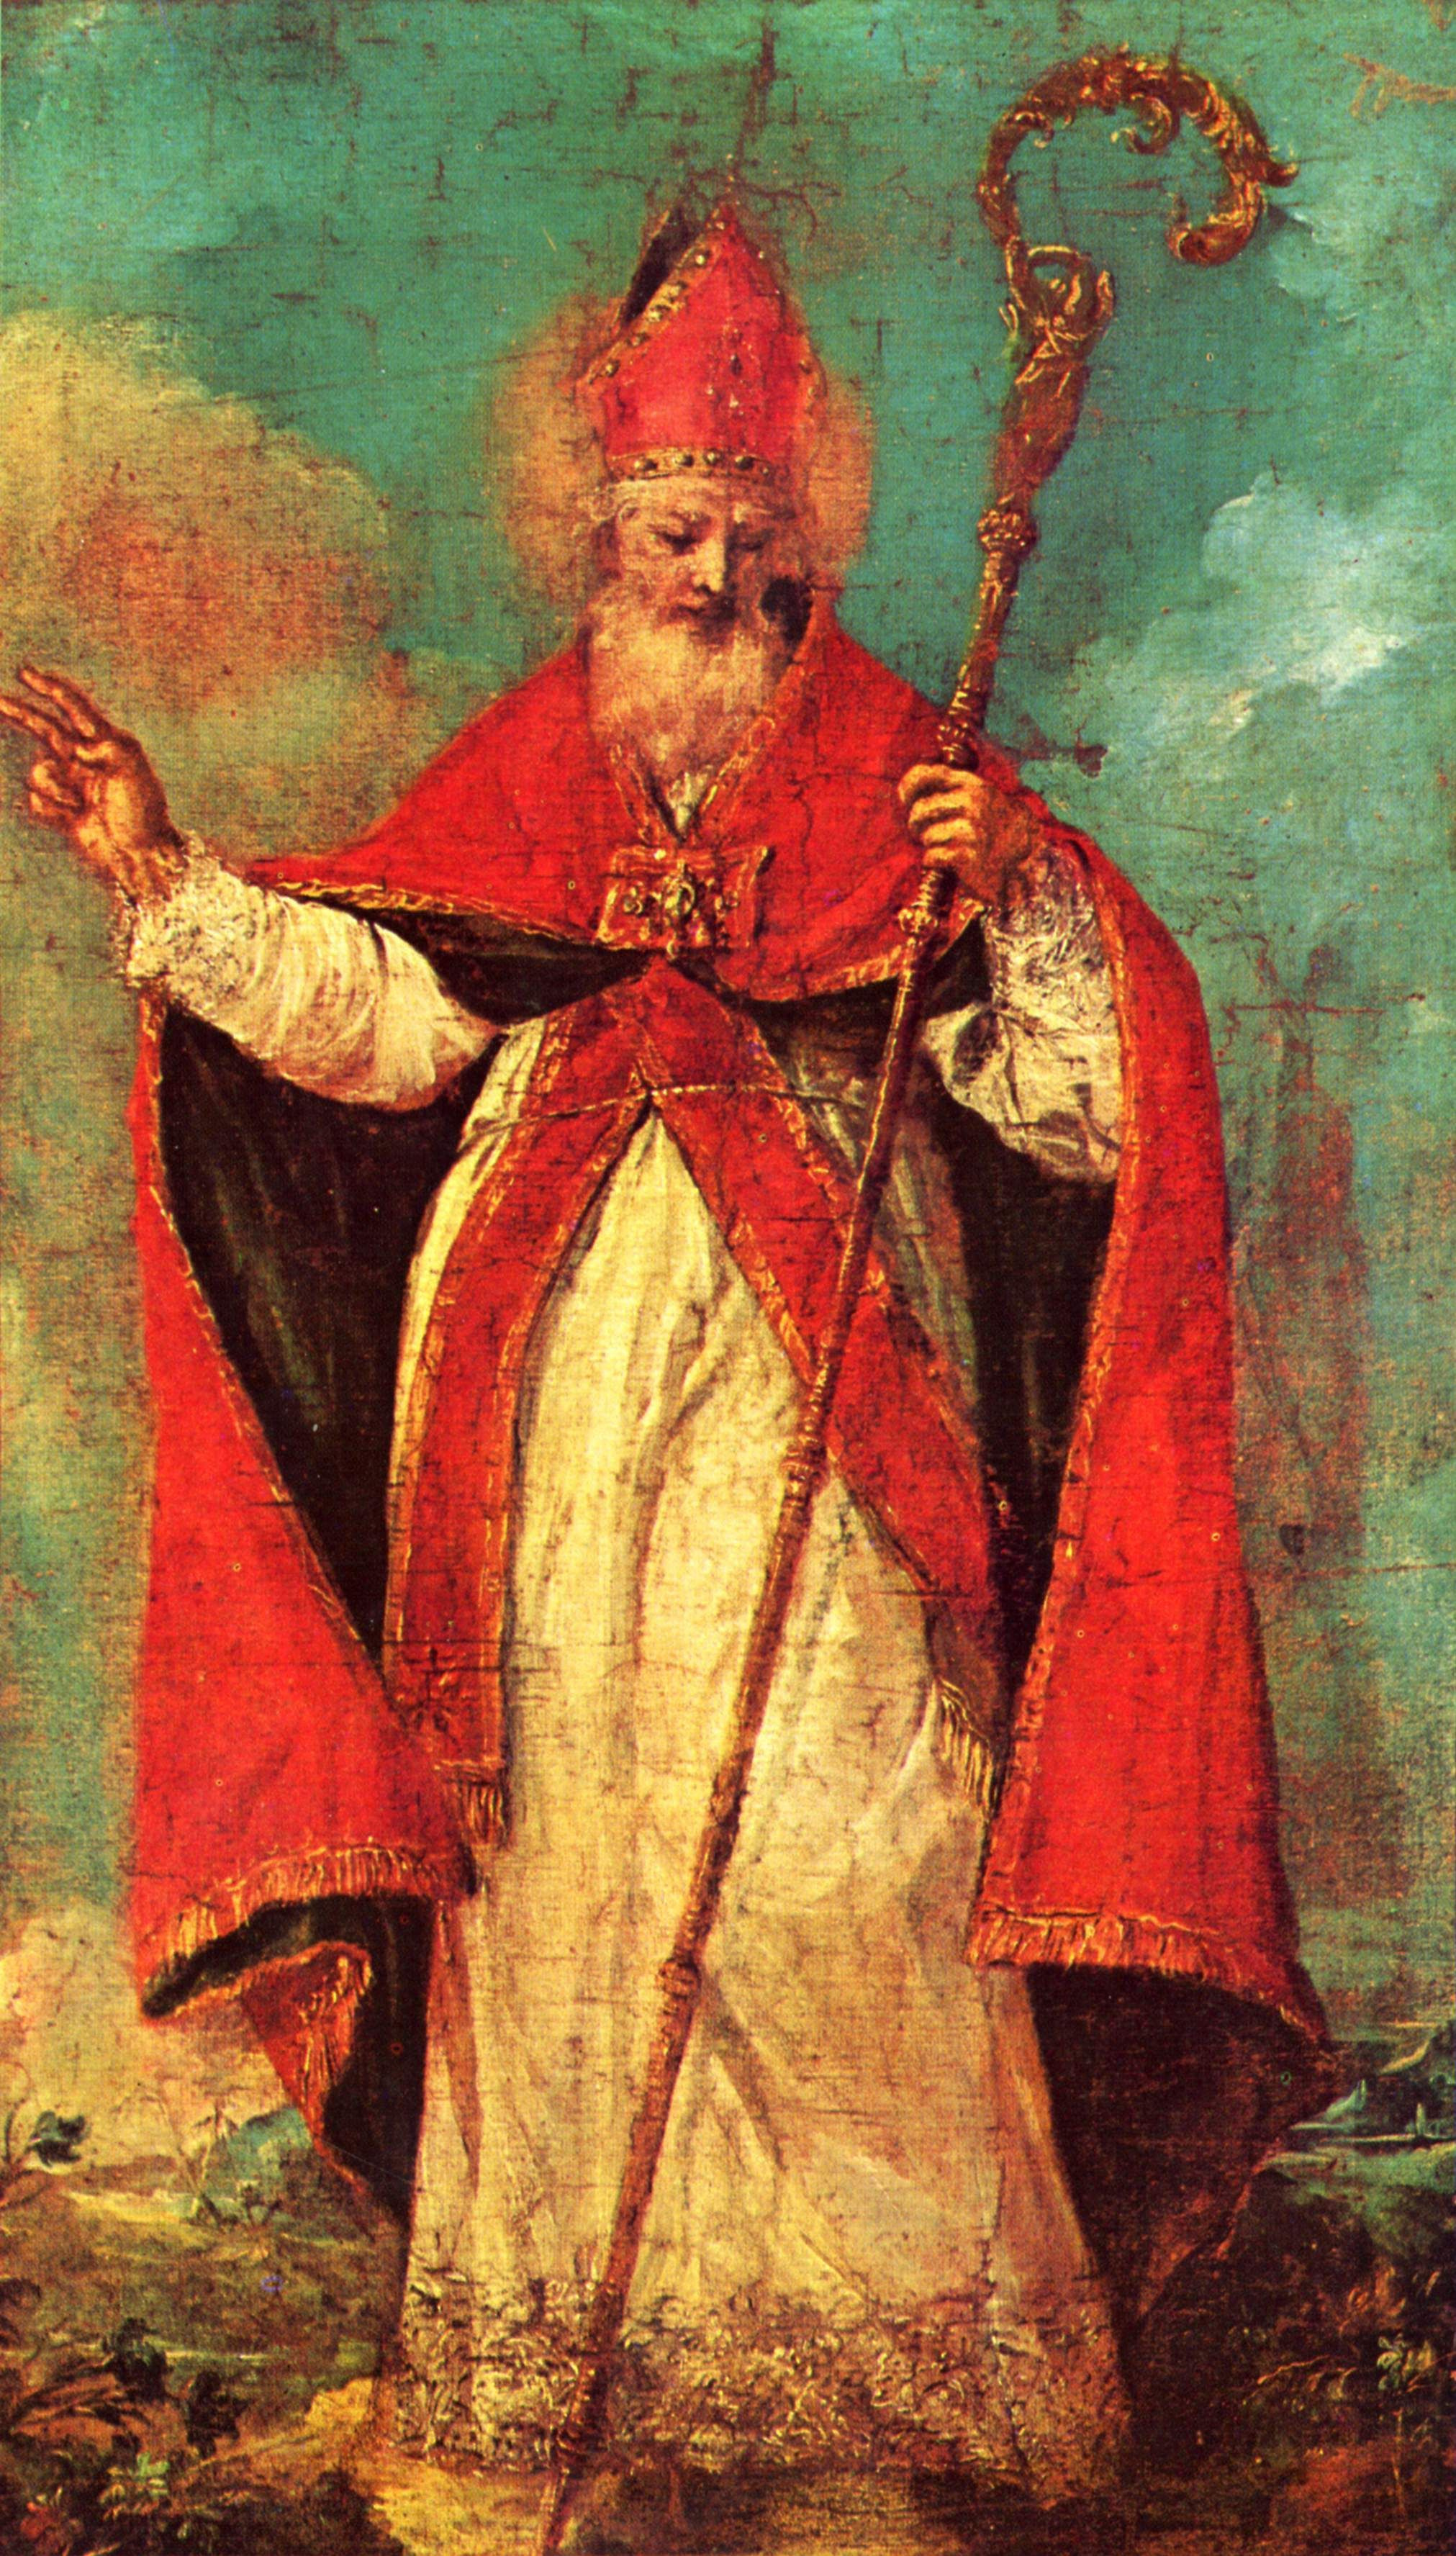 Чудеса Святого Николая: истории, иконы и картины